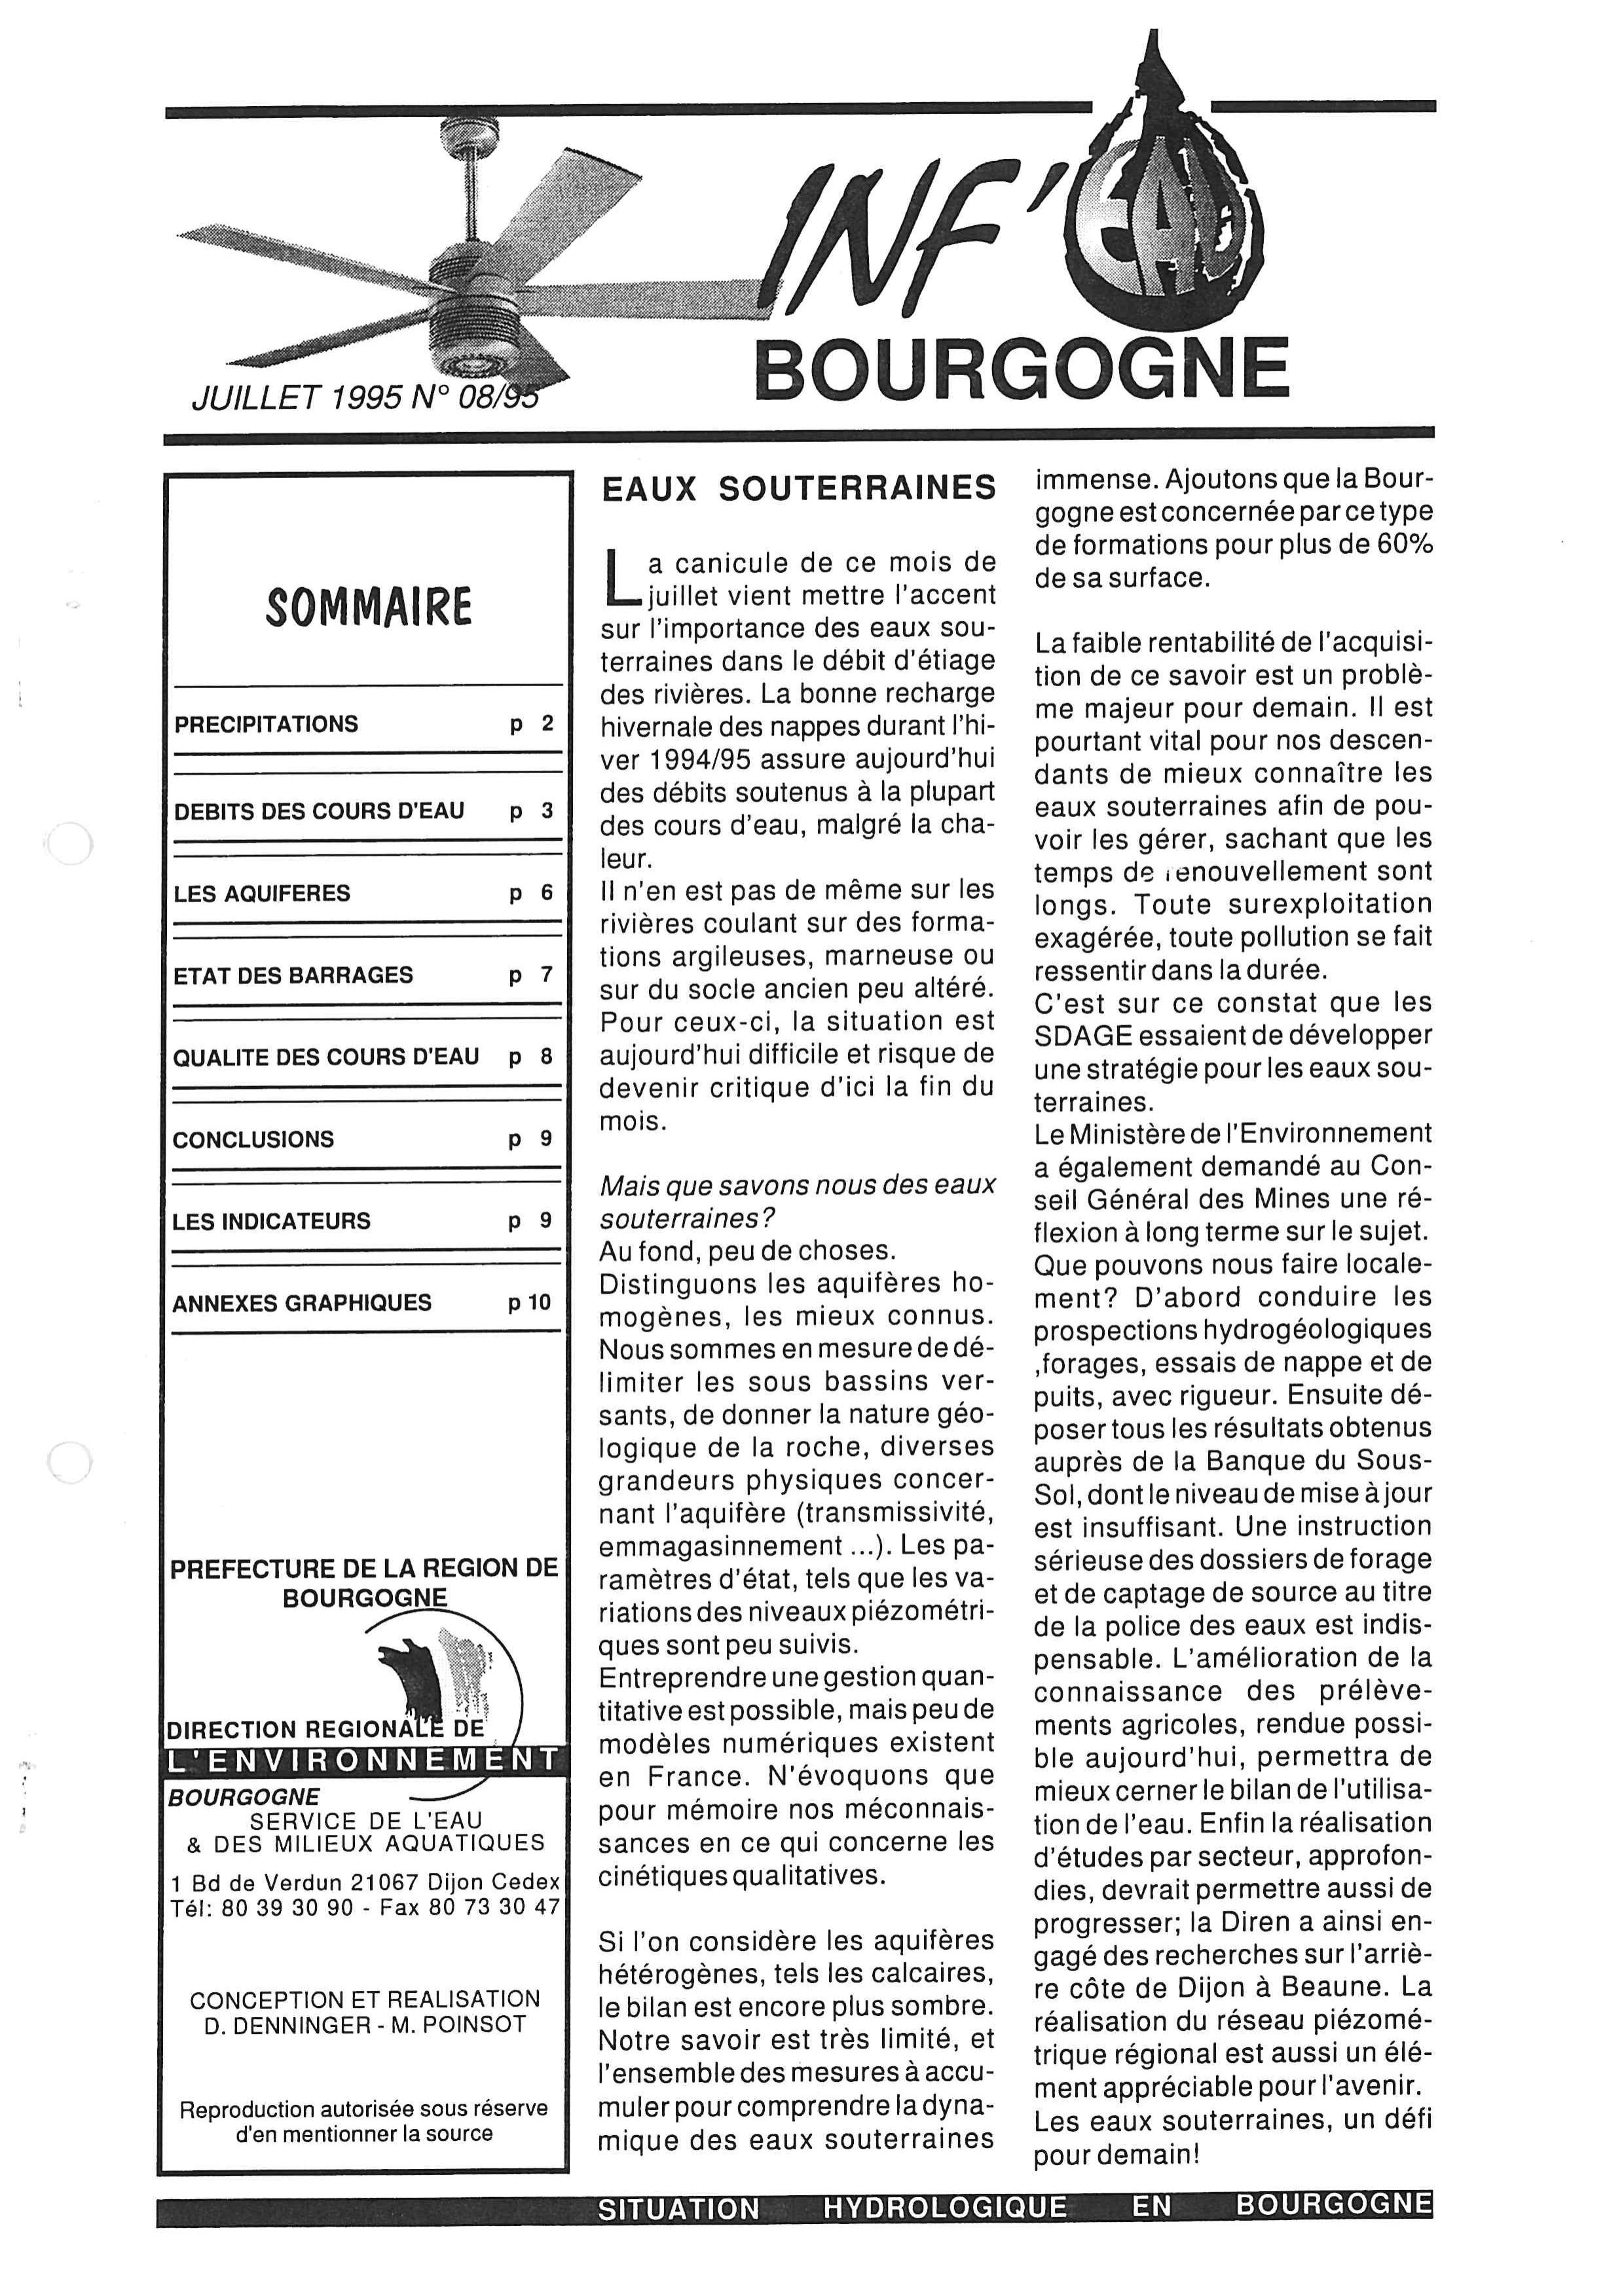 Bulletin hydrologique du mois de juillet 1995